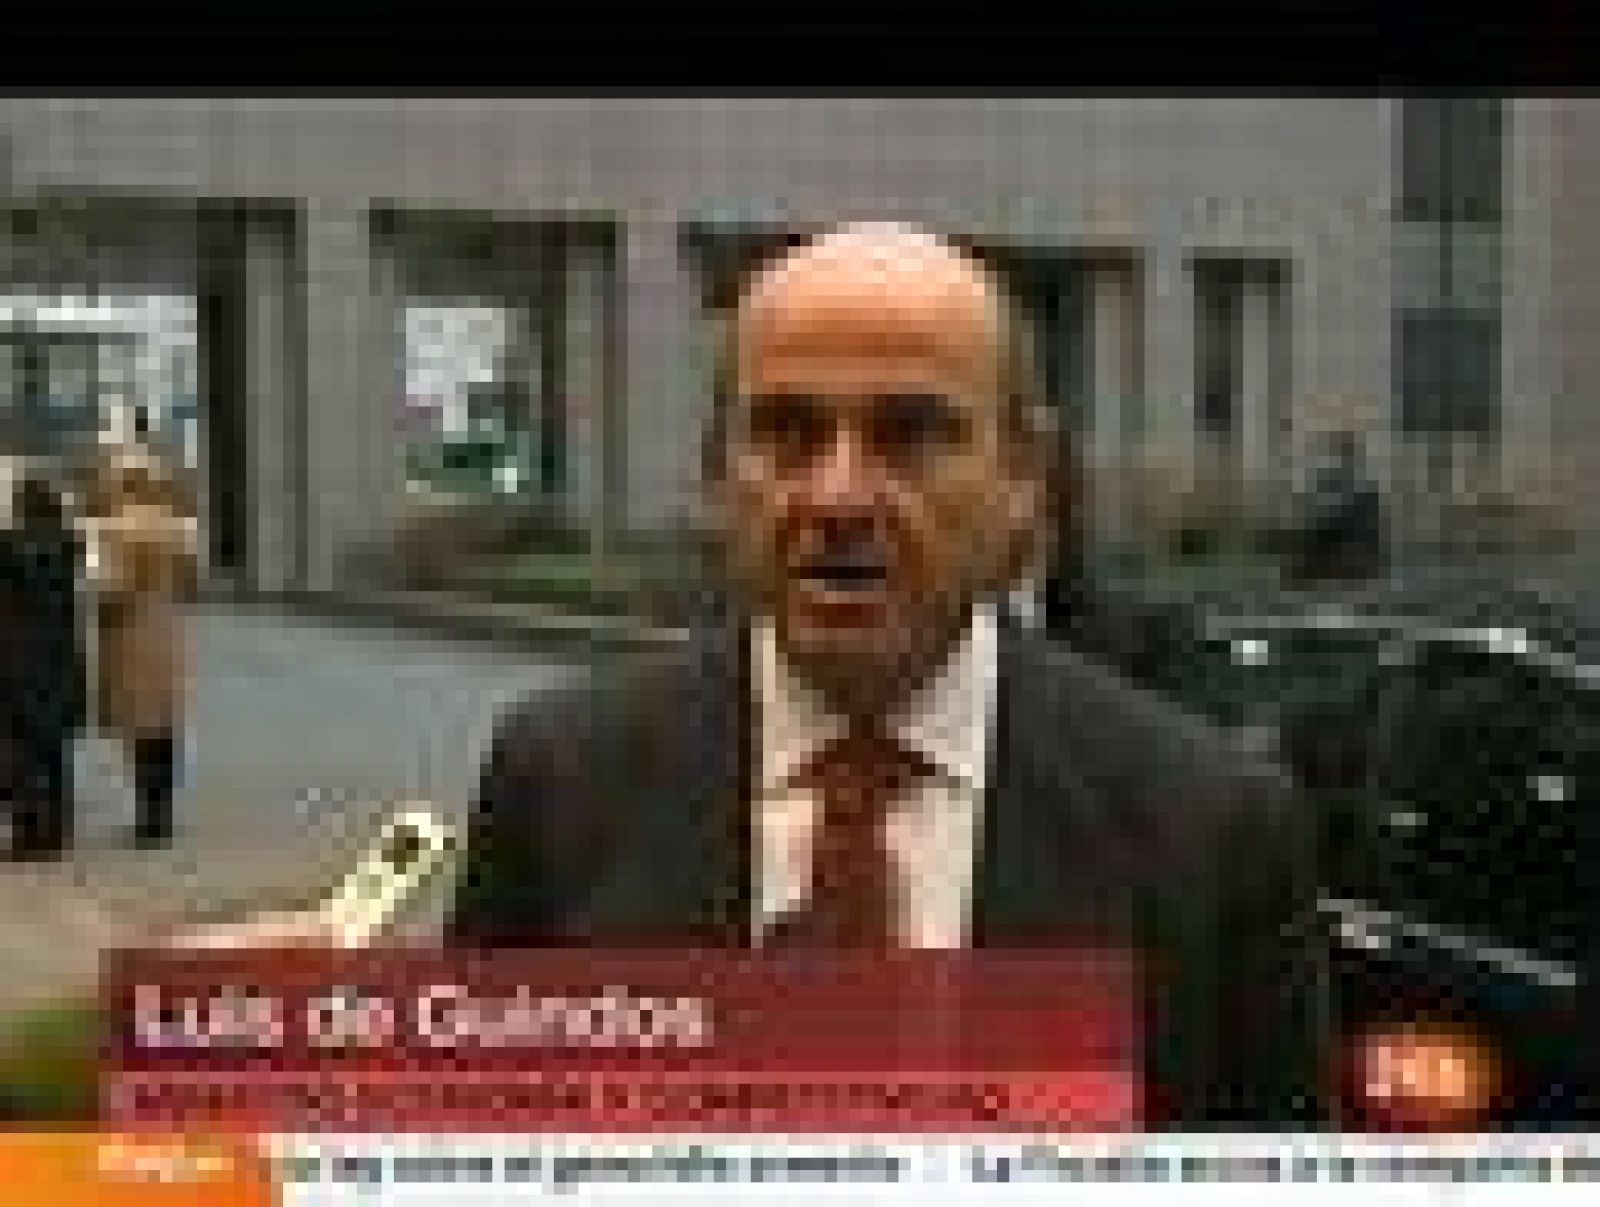  El ministro español de Economía, Luis de Guindos, ha asegurado que la estrategia de política económica de España fue "bien recibida" por el Eurogrupo que se reunió en Bruselas este lunes, a pesar de que sus colegas europeos insistieron en pedirle má